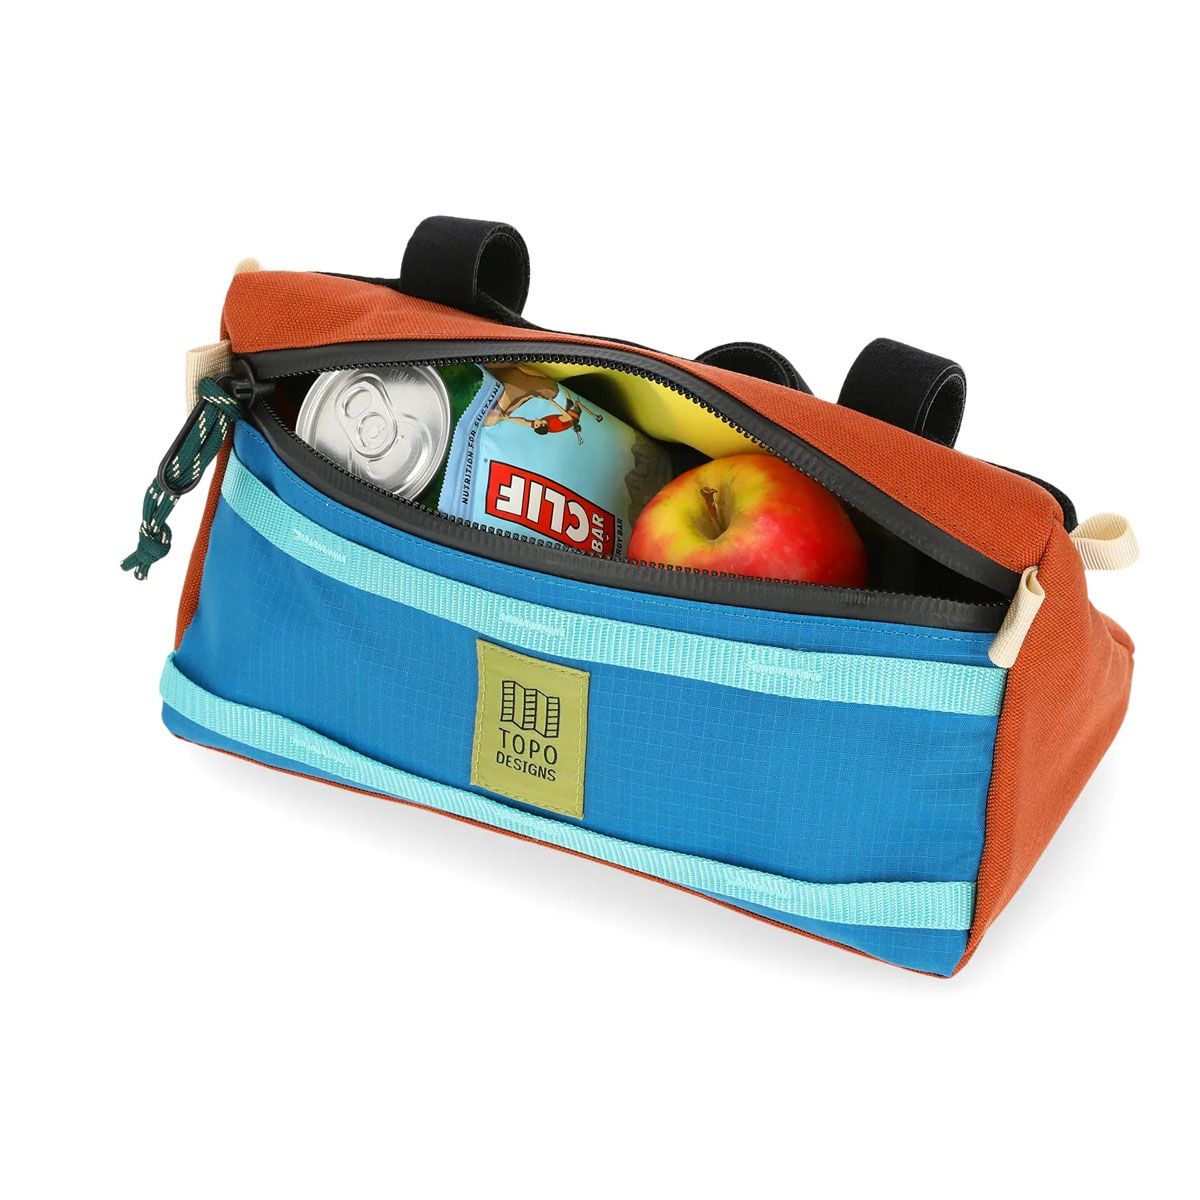 Topo Designs Bike Bag, bietet Platz für alles, von Werkzeug und Schläuchen bis hin zu einer zusätzlichen Schicht oder wichtigen Snacks